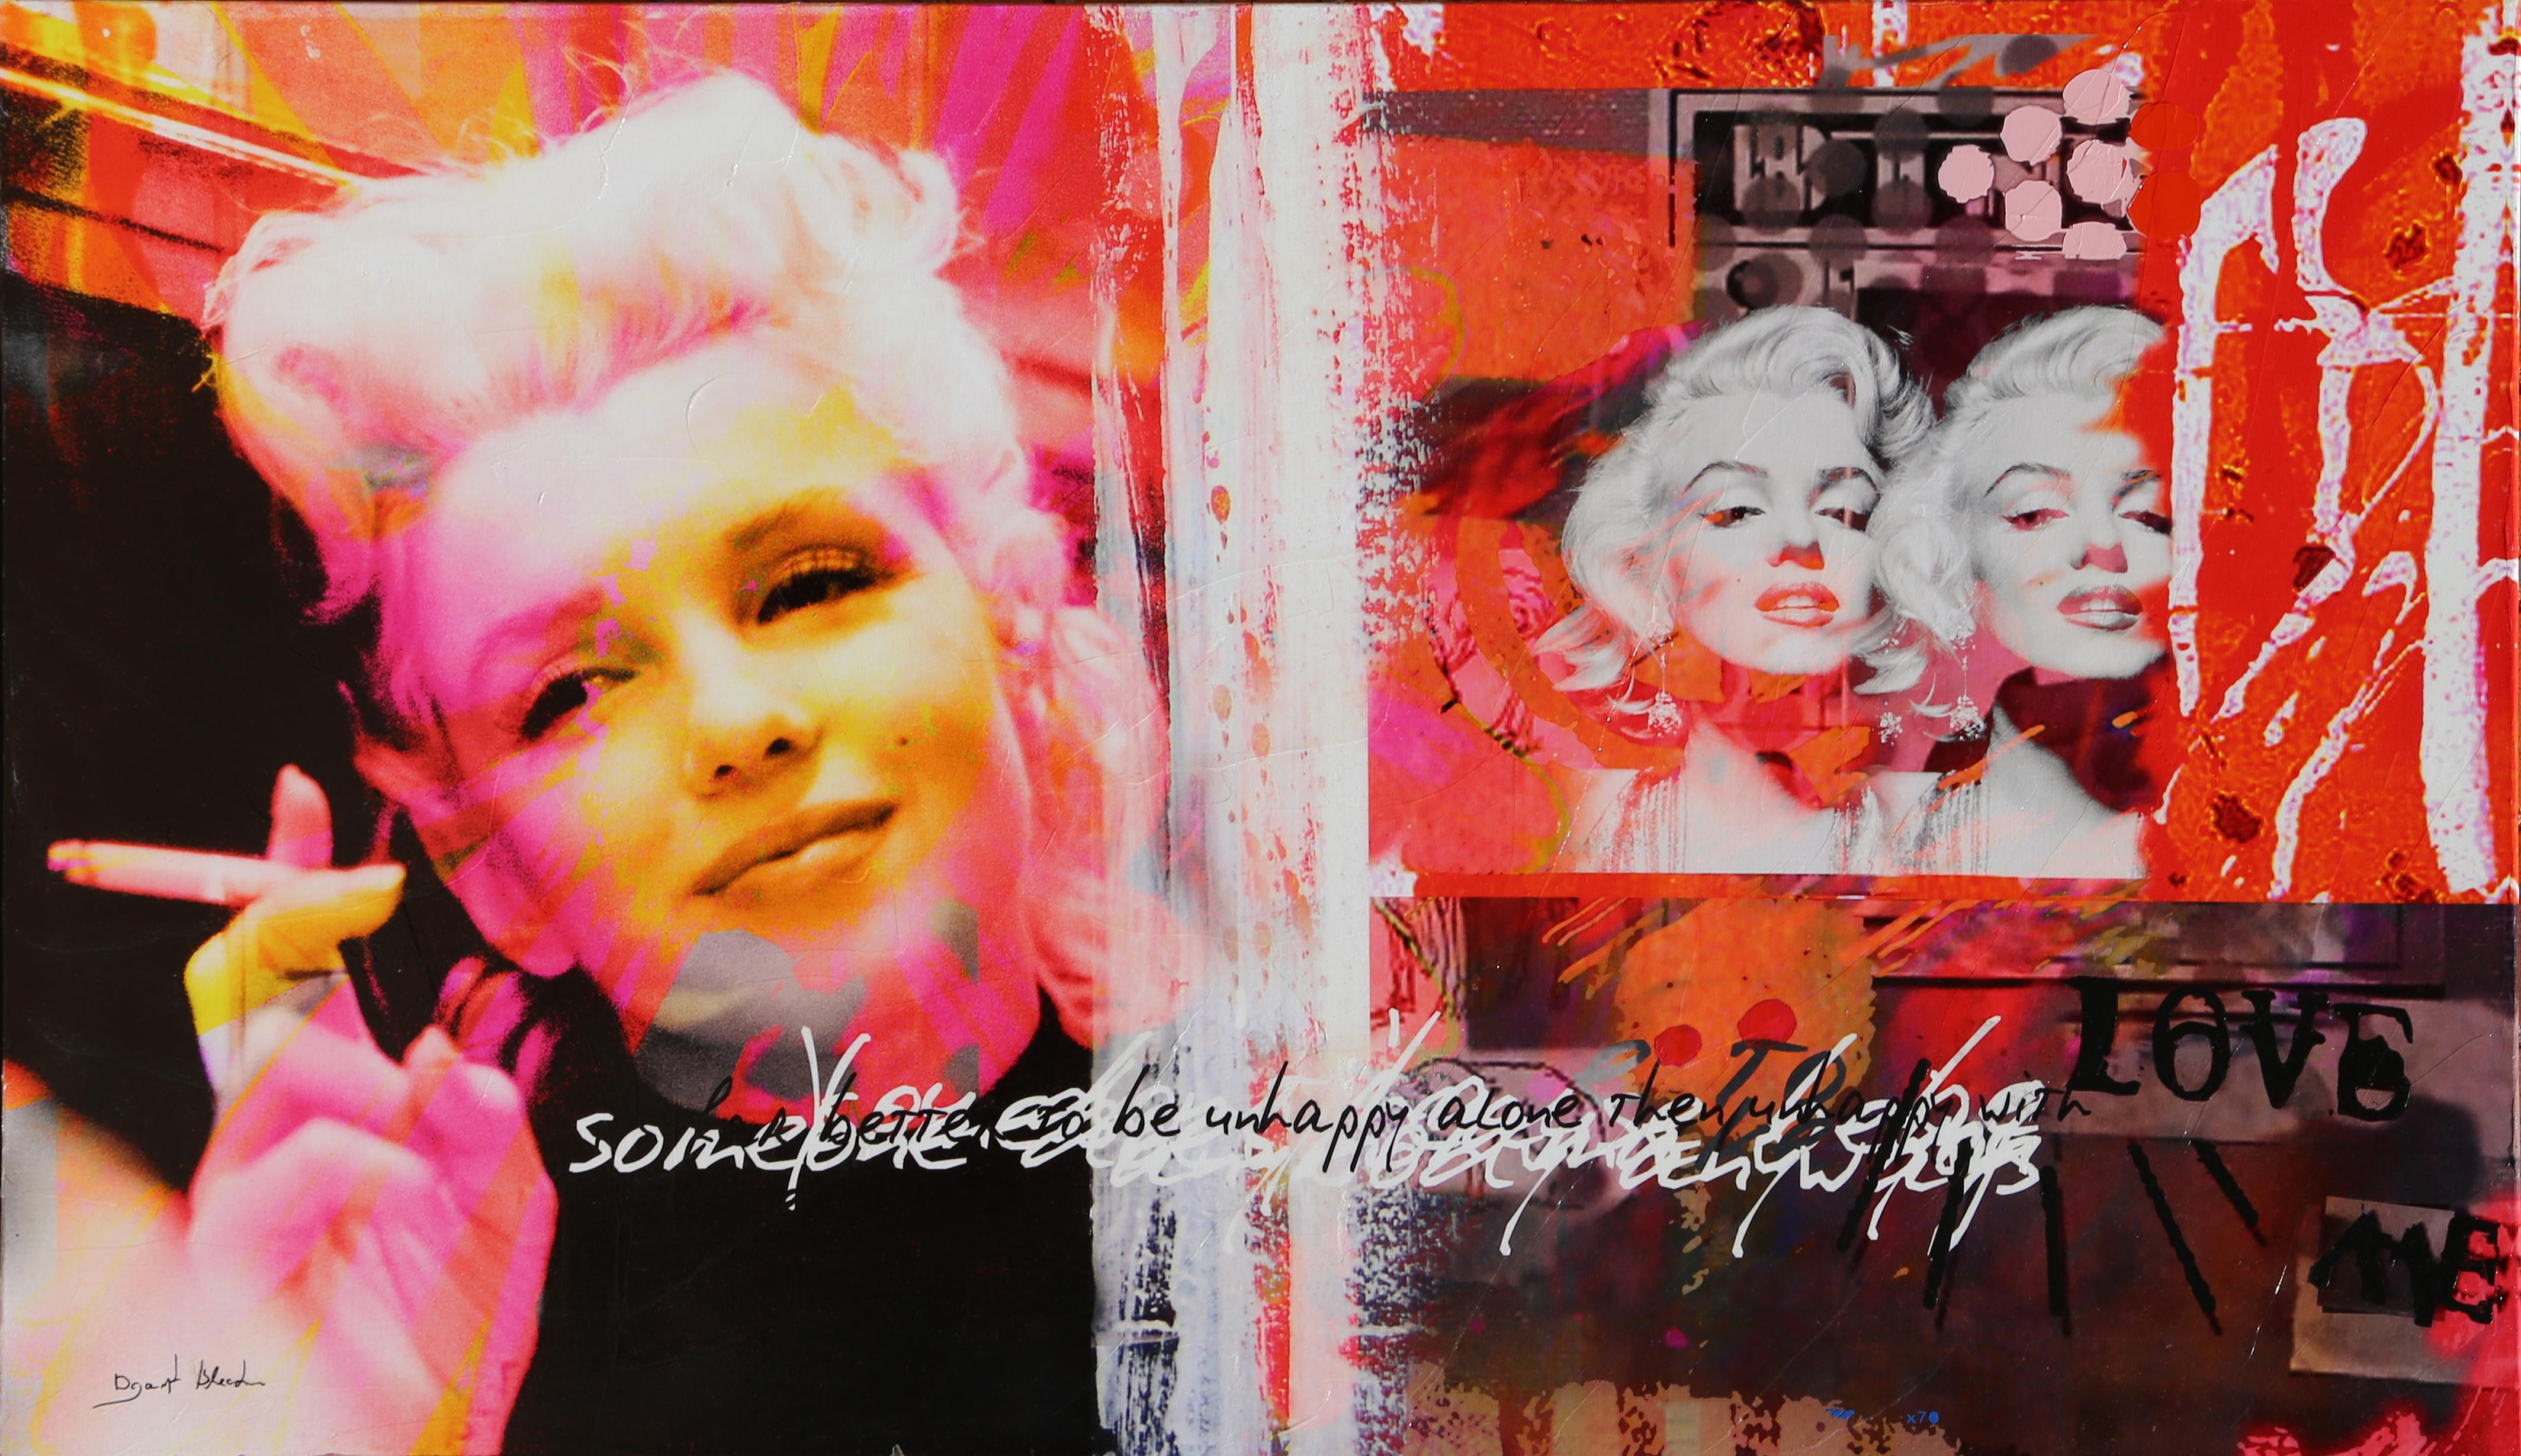 Artiste : Dganit Blechner, israélien (1957 -  )
Titre : Marilyn Monroe
Moyen : Sérigraphie sur toile, signée et numérotée au marqueur au verso
Edition : 2/8
Taille : 27.5 x 47 in. (69,85 x 119,38 cm)
